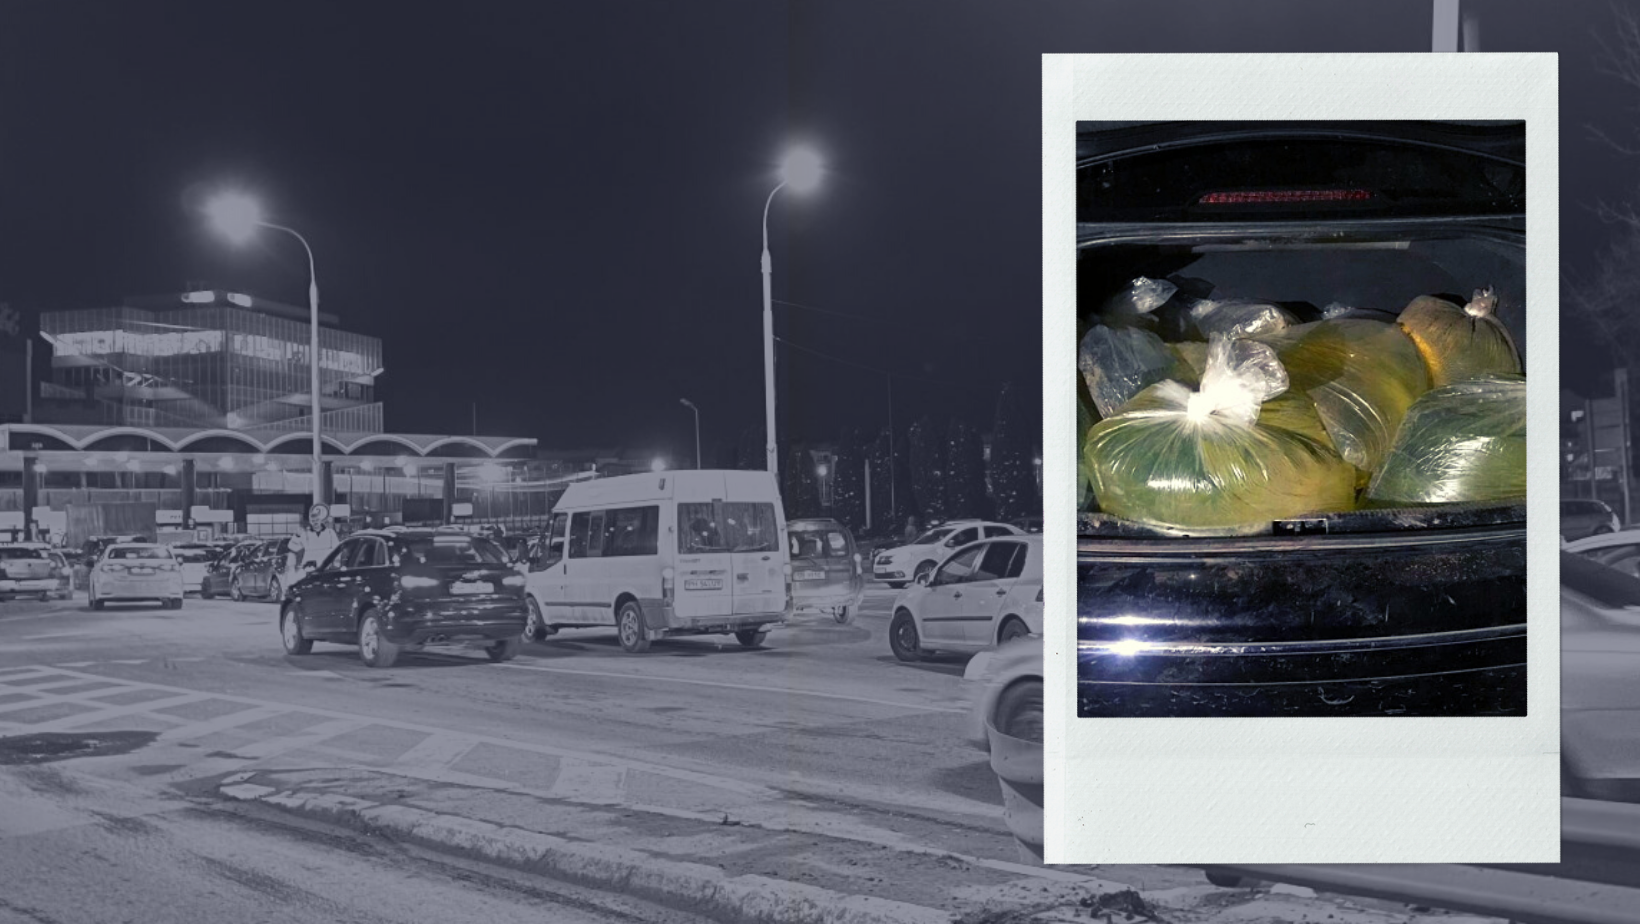 Imaginea cu pungile de benzină este un fals. A fost surprinsă în 2019, în Mexic